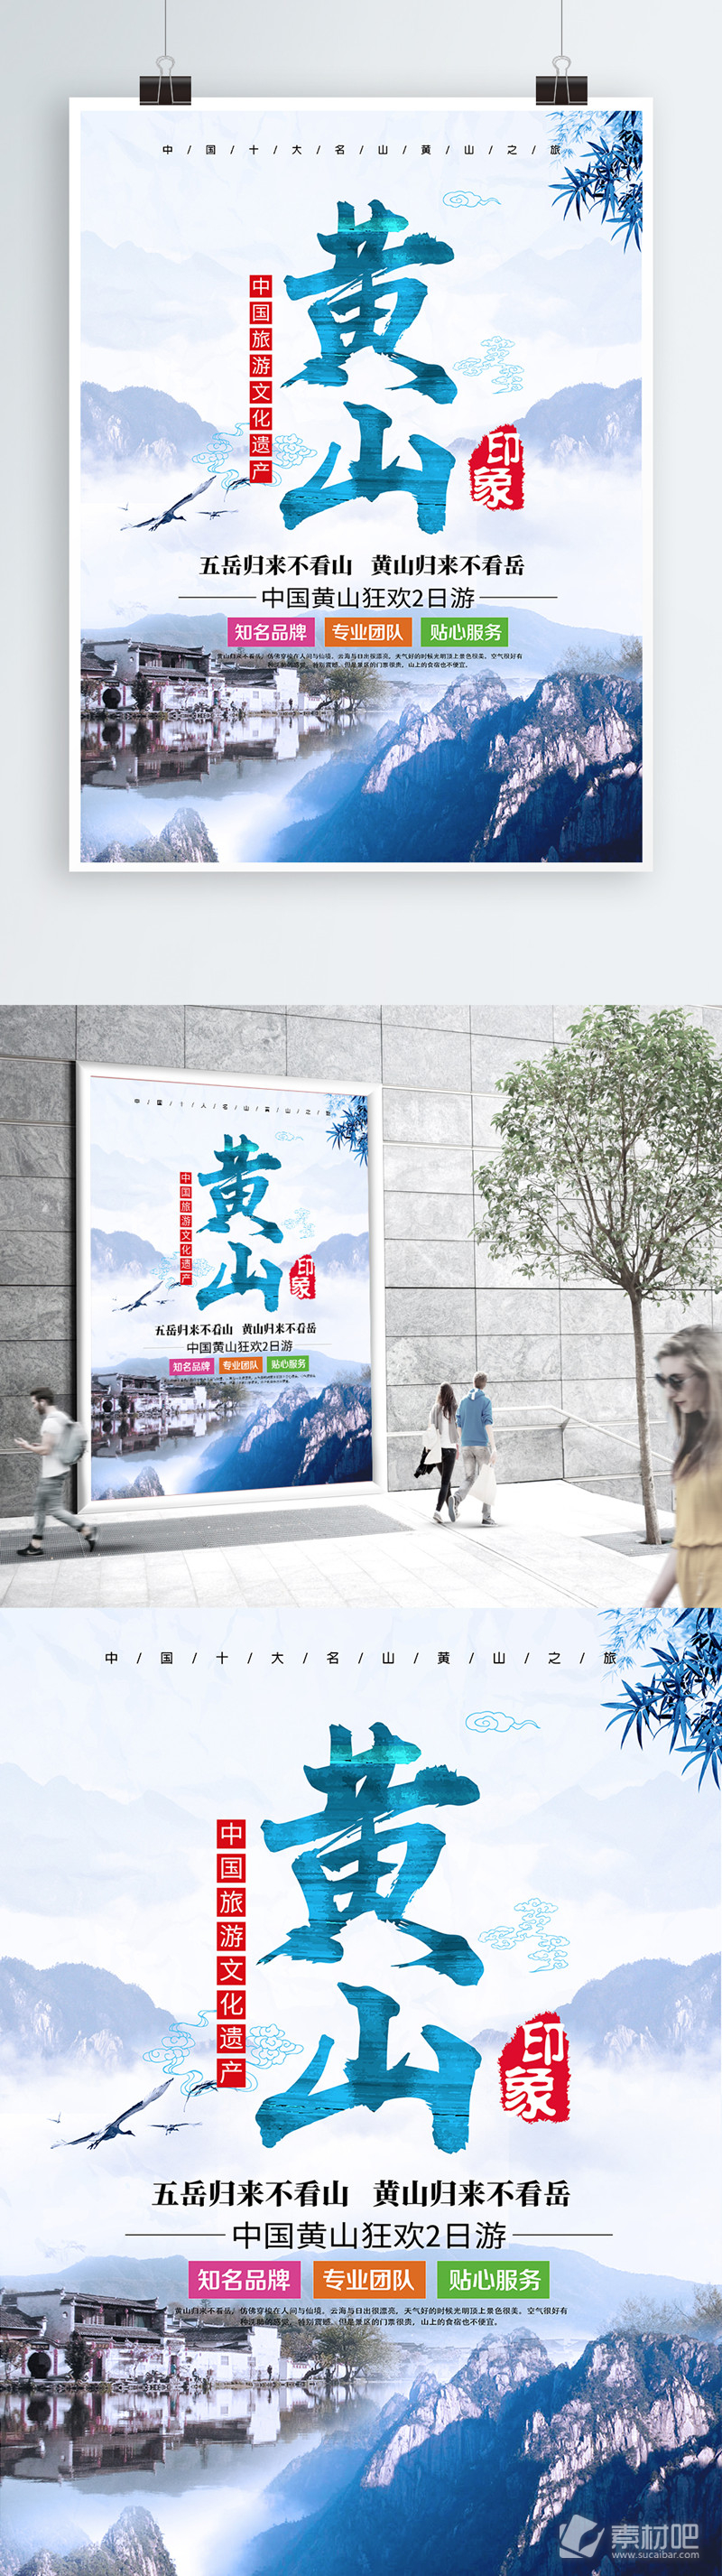 中国风创意毛笔字安徽黄山旅游海报